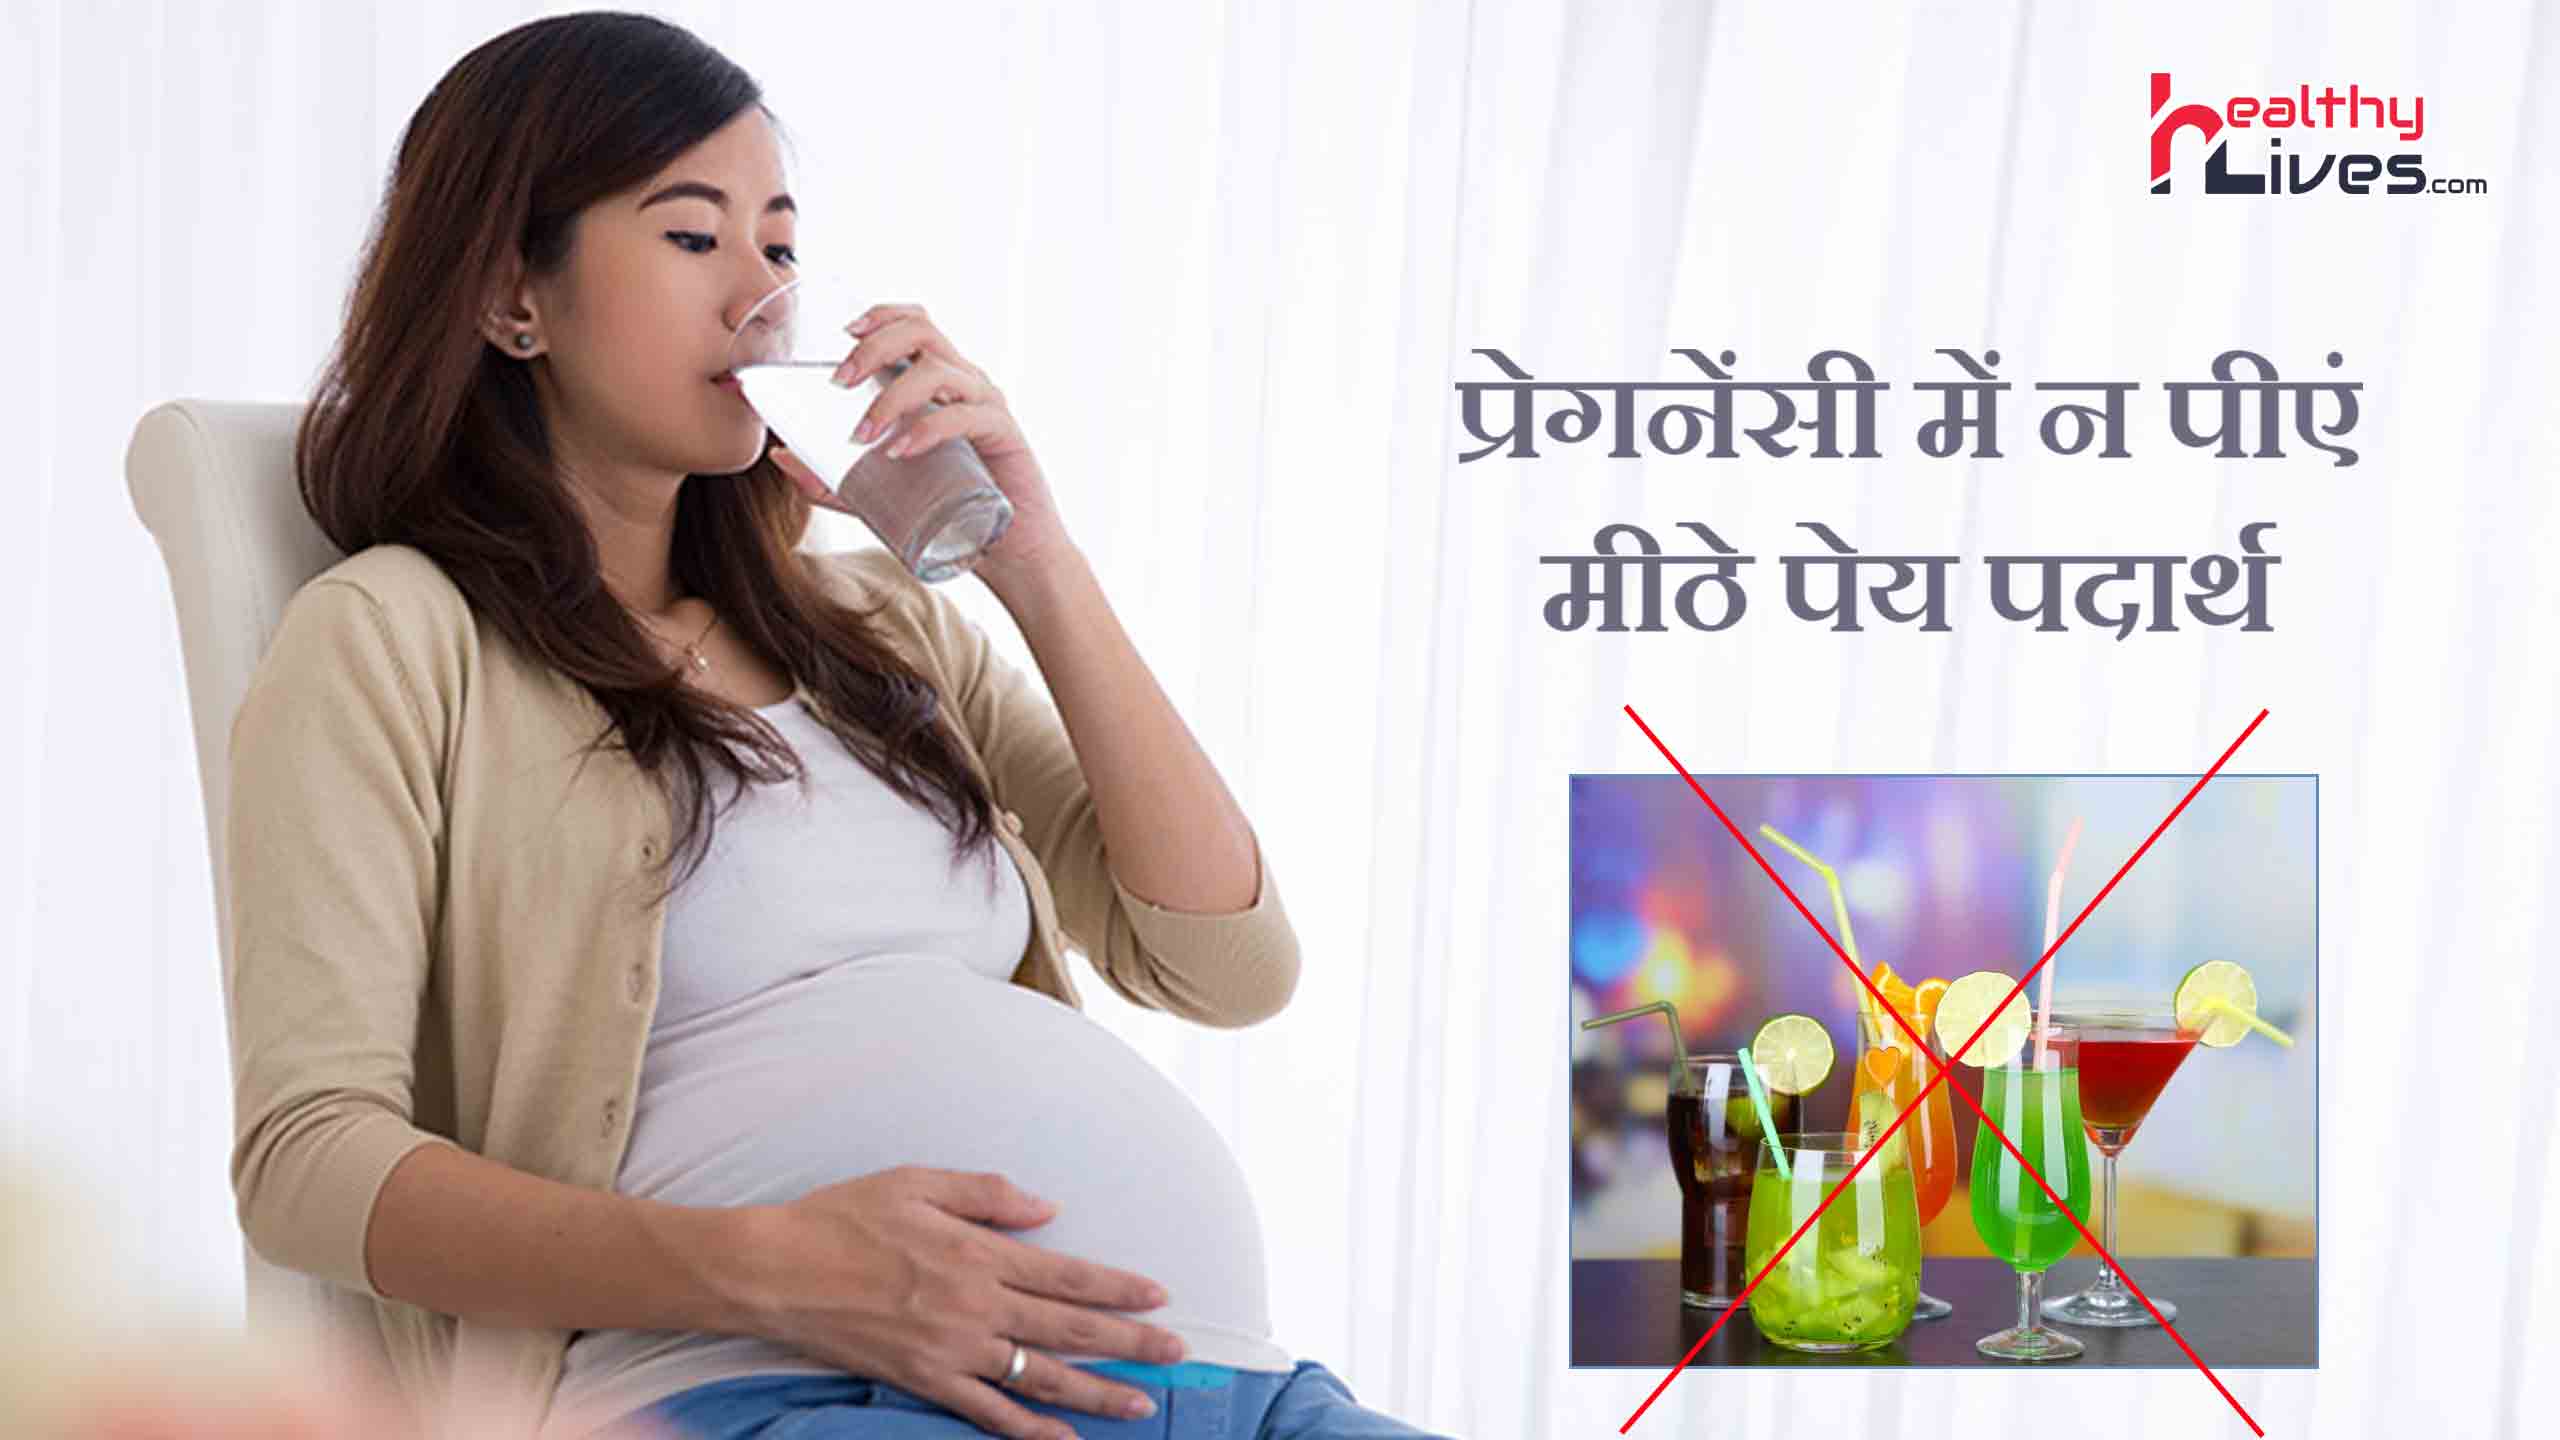 गर्भवती न पिए मीठे पेय पदार्थ, बच्चों को होगा मोटापे और दमा का खतरा